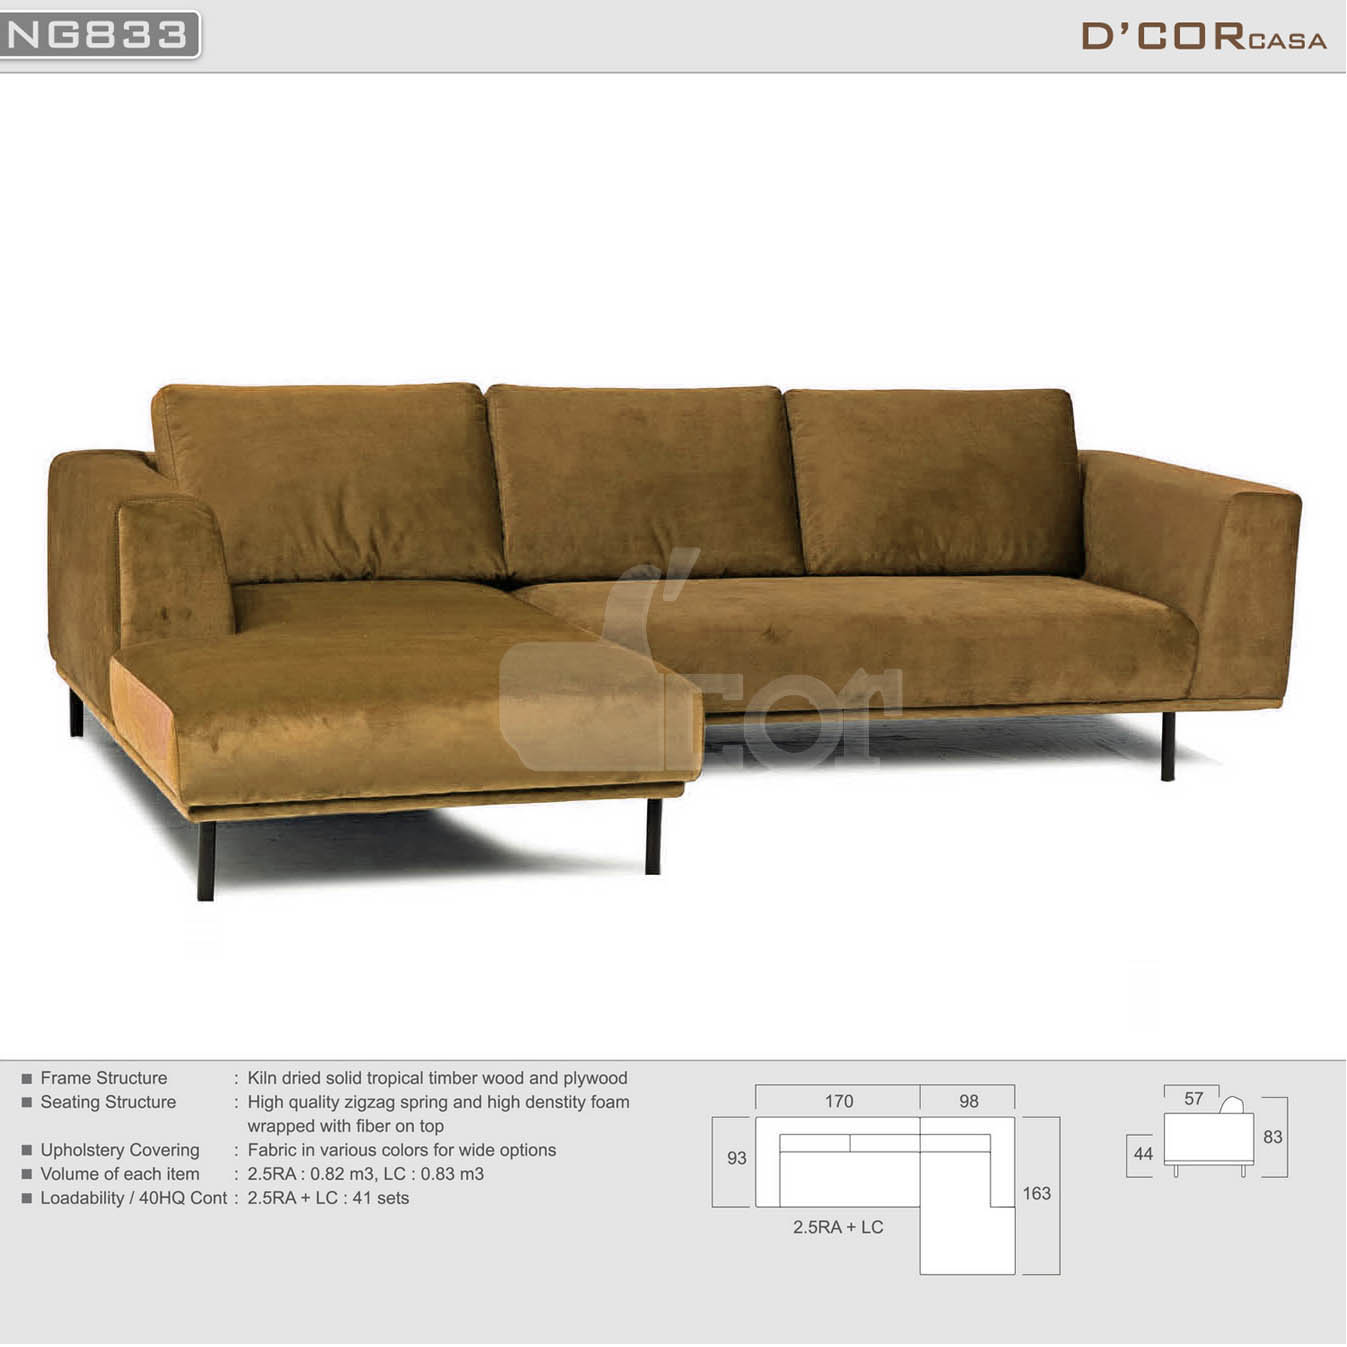 Mẫu sofa nỉ đẹp hiện đại nhập khẩu Malaysia NG833 > Mẫu sofa nỉ đẹp hiện đại nhập khẩu Malaysia NG833